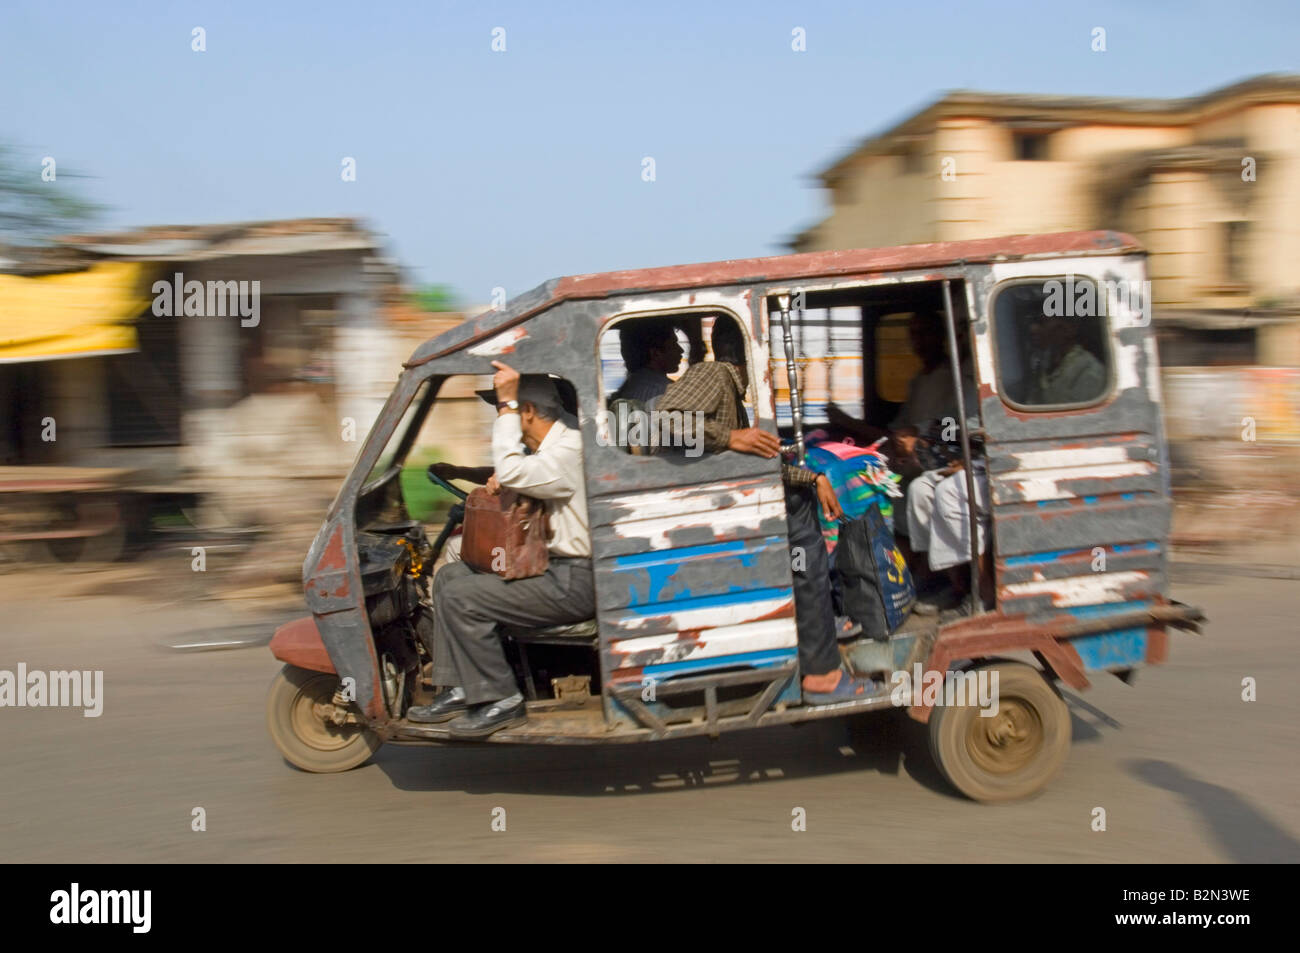 Un auto rickshaw (tuk tuk) et les passagers à Varanasi. Vitesse d'obturation lente et le panoramique de flou. Banque D'Images